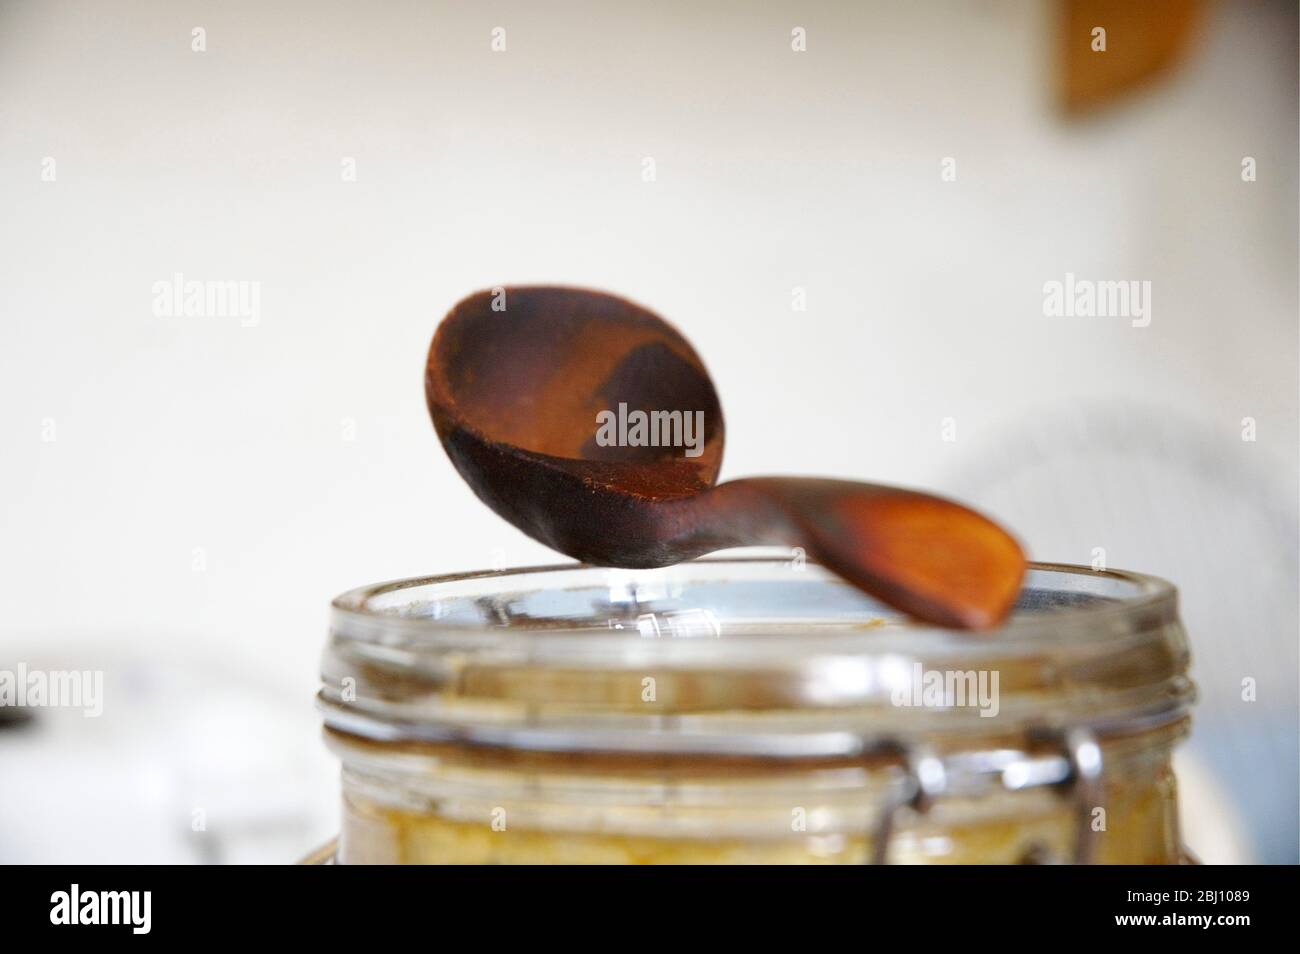 Gut abgenutzte Holz Kaffee Maßnahme auf der Oberseite des Behälters für die Lagerung von Kaffee - Stockfoto